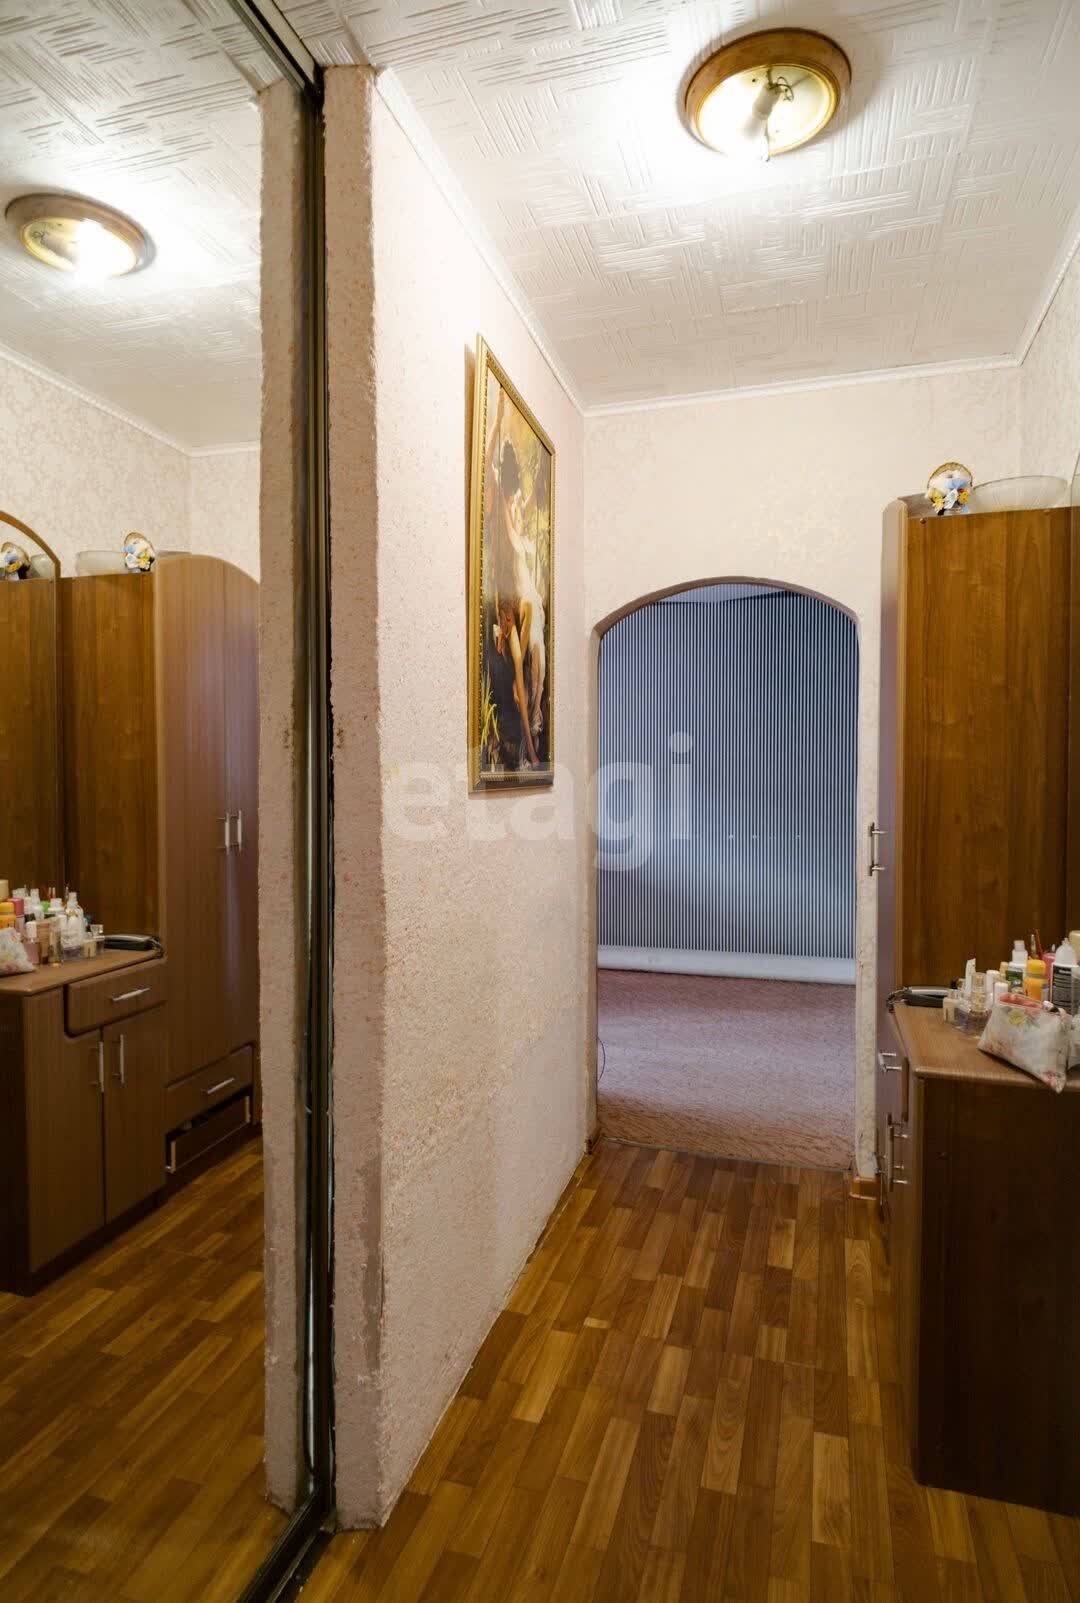 Продажа 3-комнатной квартиры, Комсомольск-на-Амуре, Вокзальная,  80